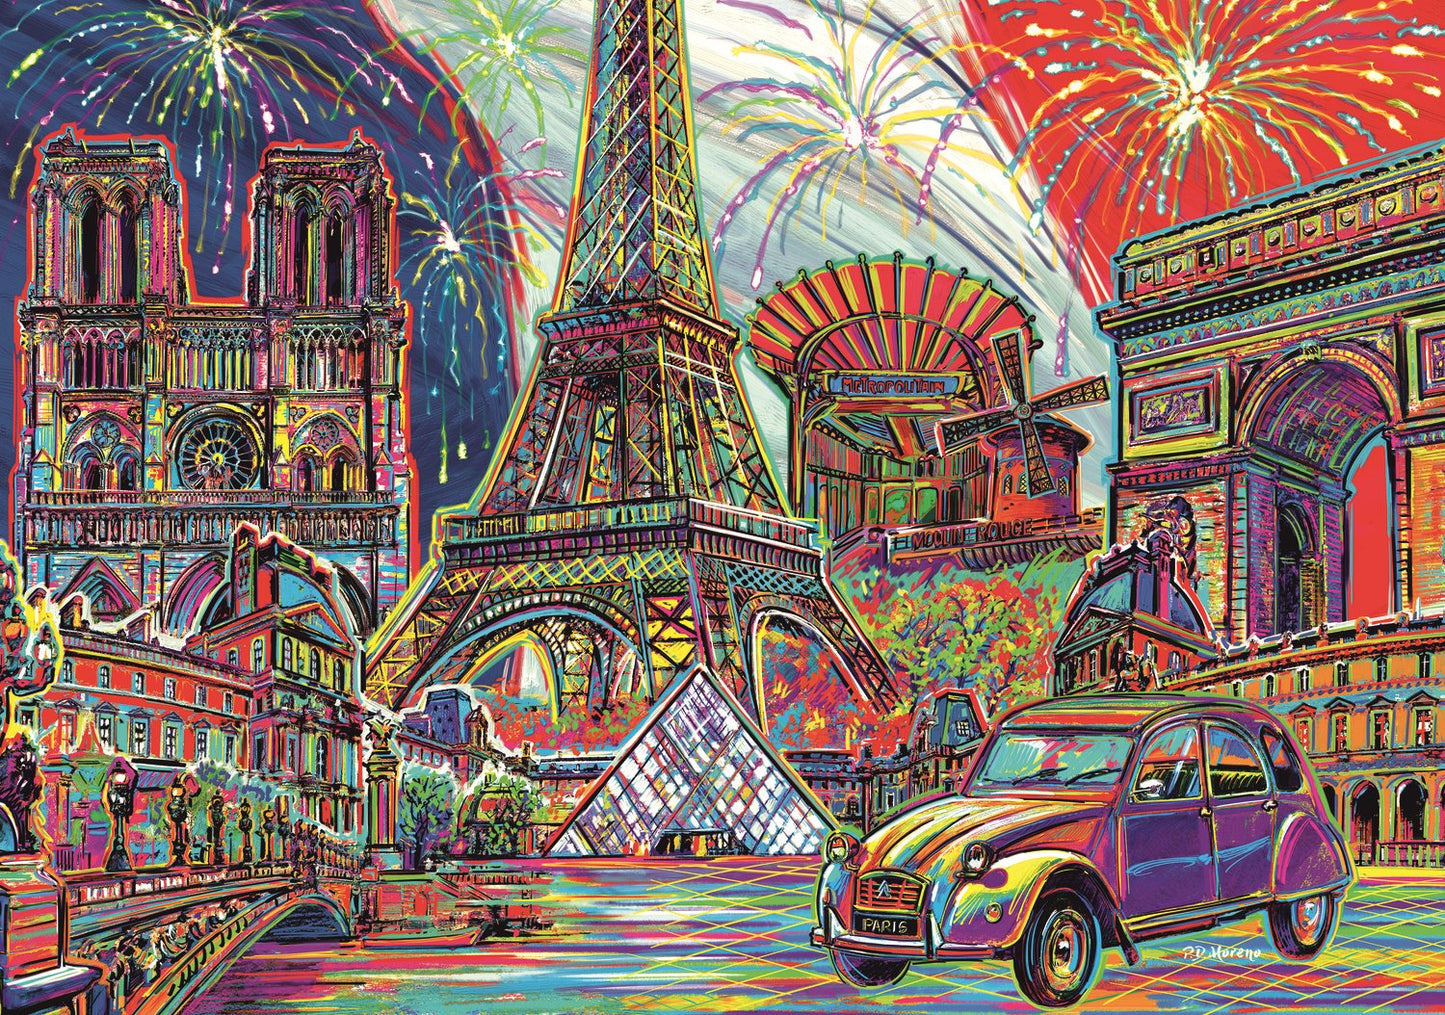 Trefl - Colours of Paris - 1000 piece jigsaw puzzle